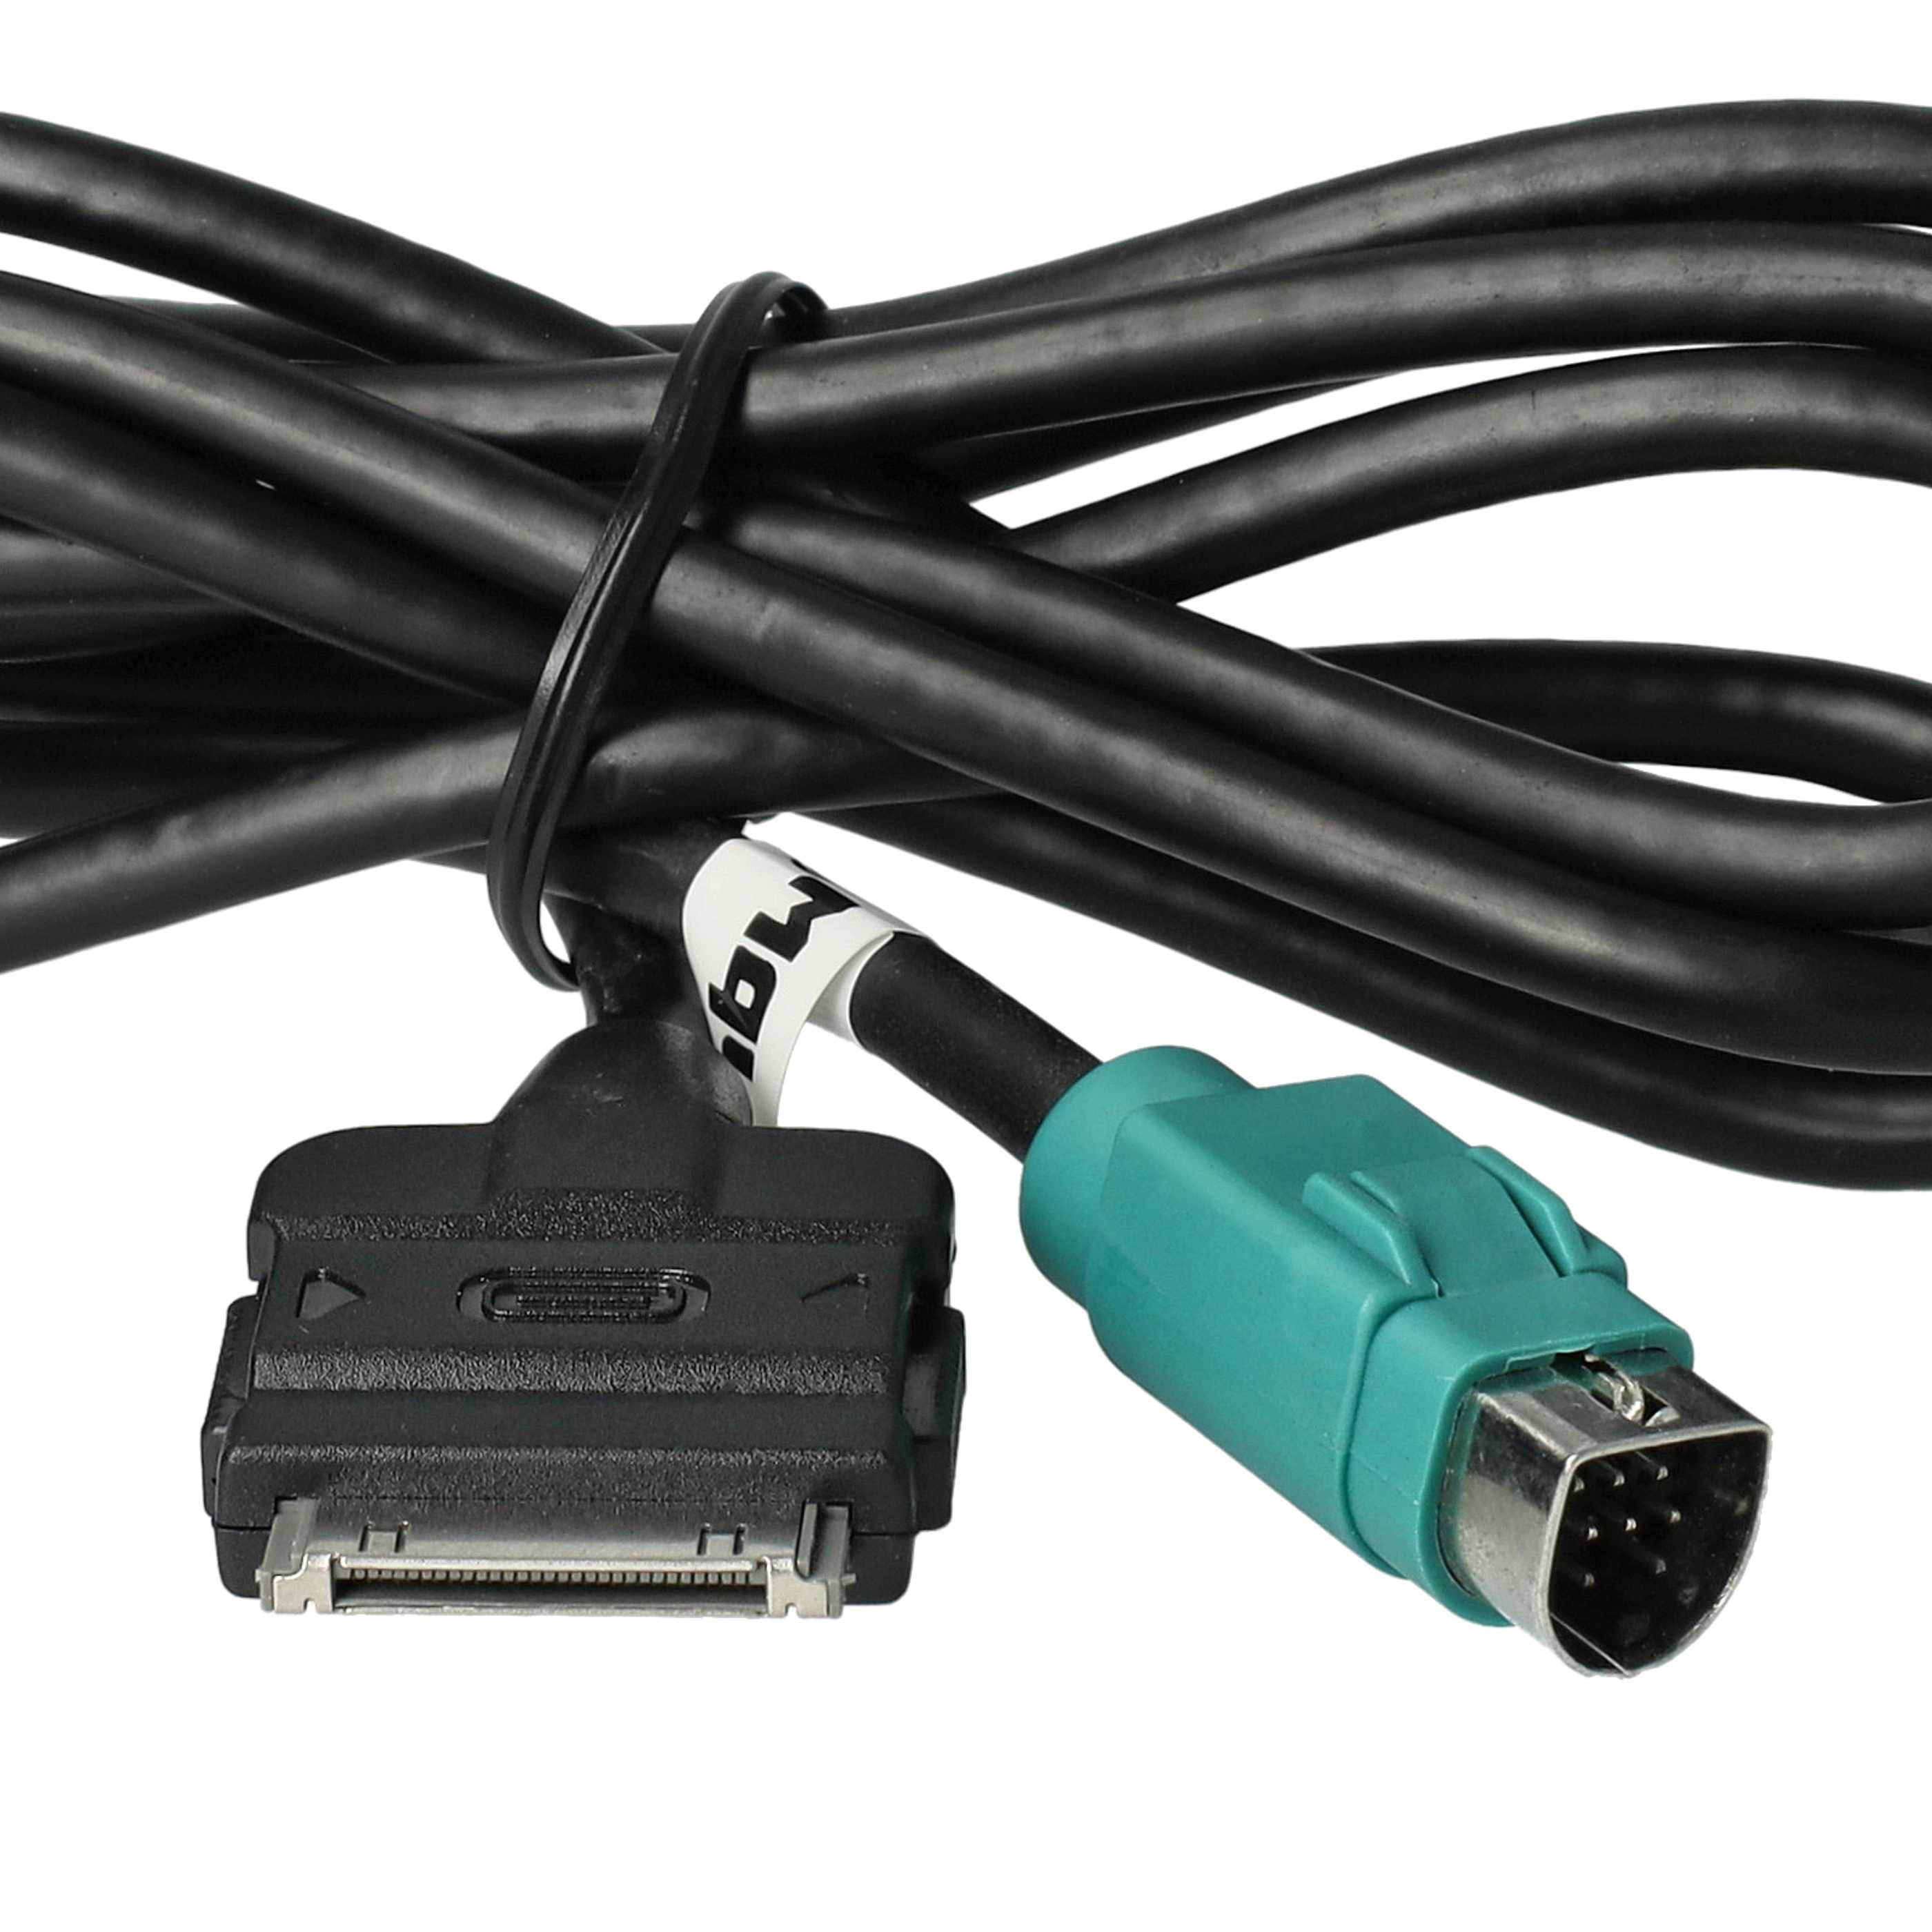 Audio Kabel als Ersatz für Alpine KCE-422i für Alpine Auto, Fahrzeug - 100 cm lang